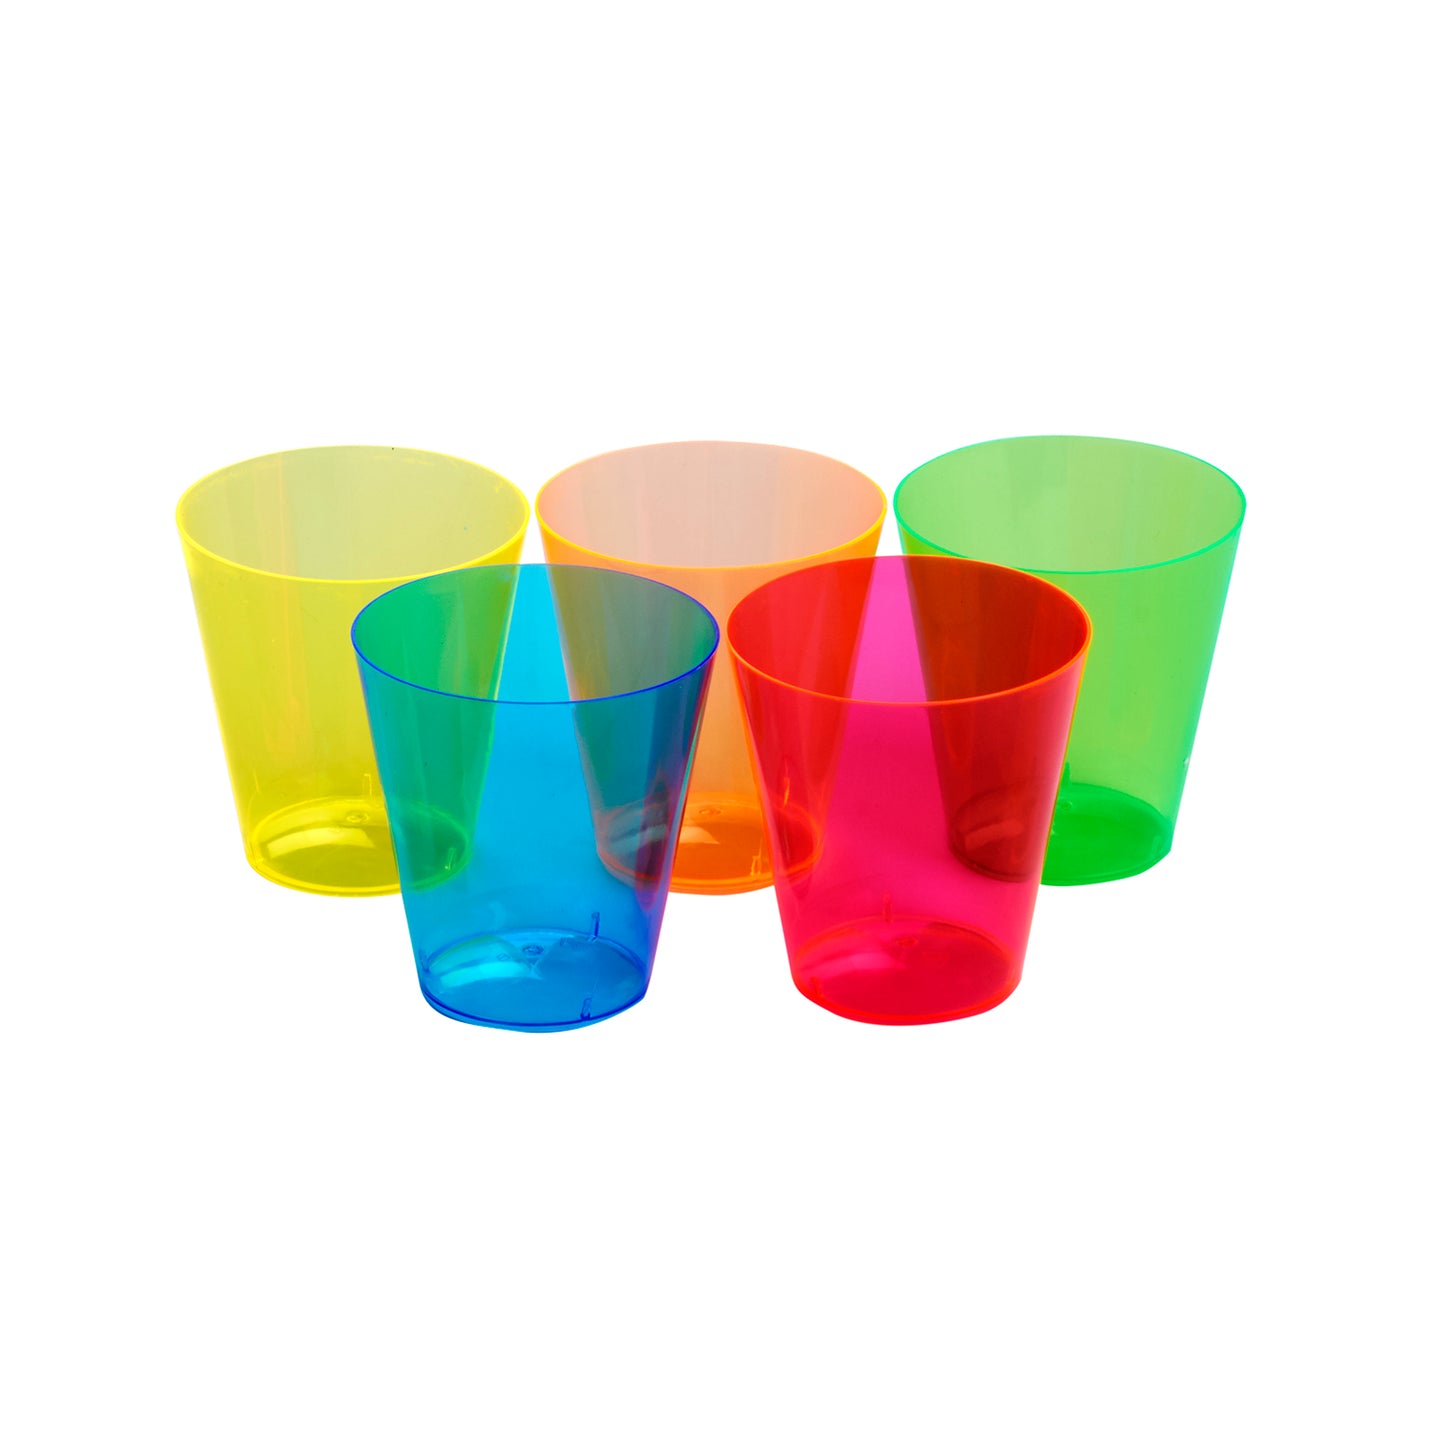 500 pc. Neon Multi Colored Disposable Plastic Shot Glasses - 2 oz. size